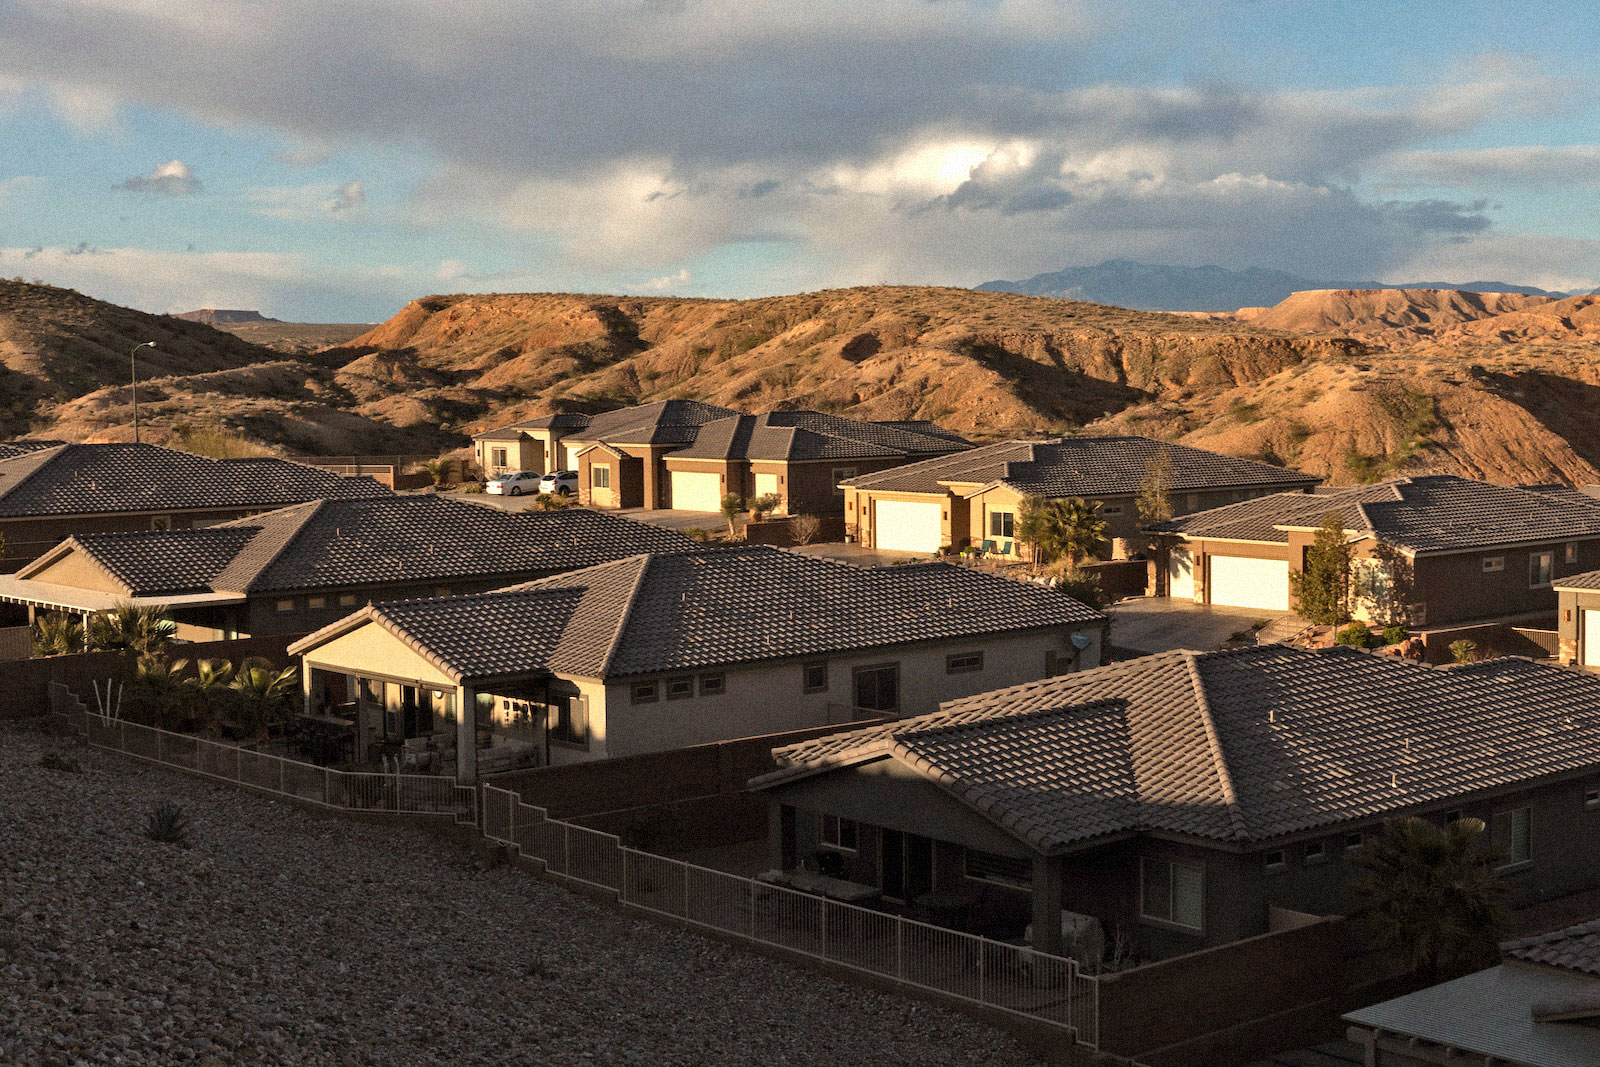 shadows creep over rows of desert housing